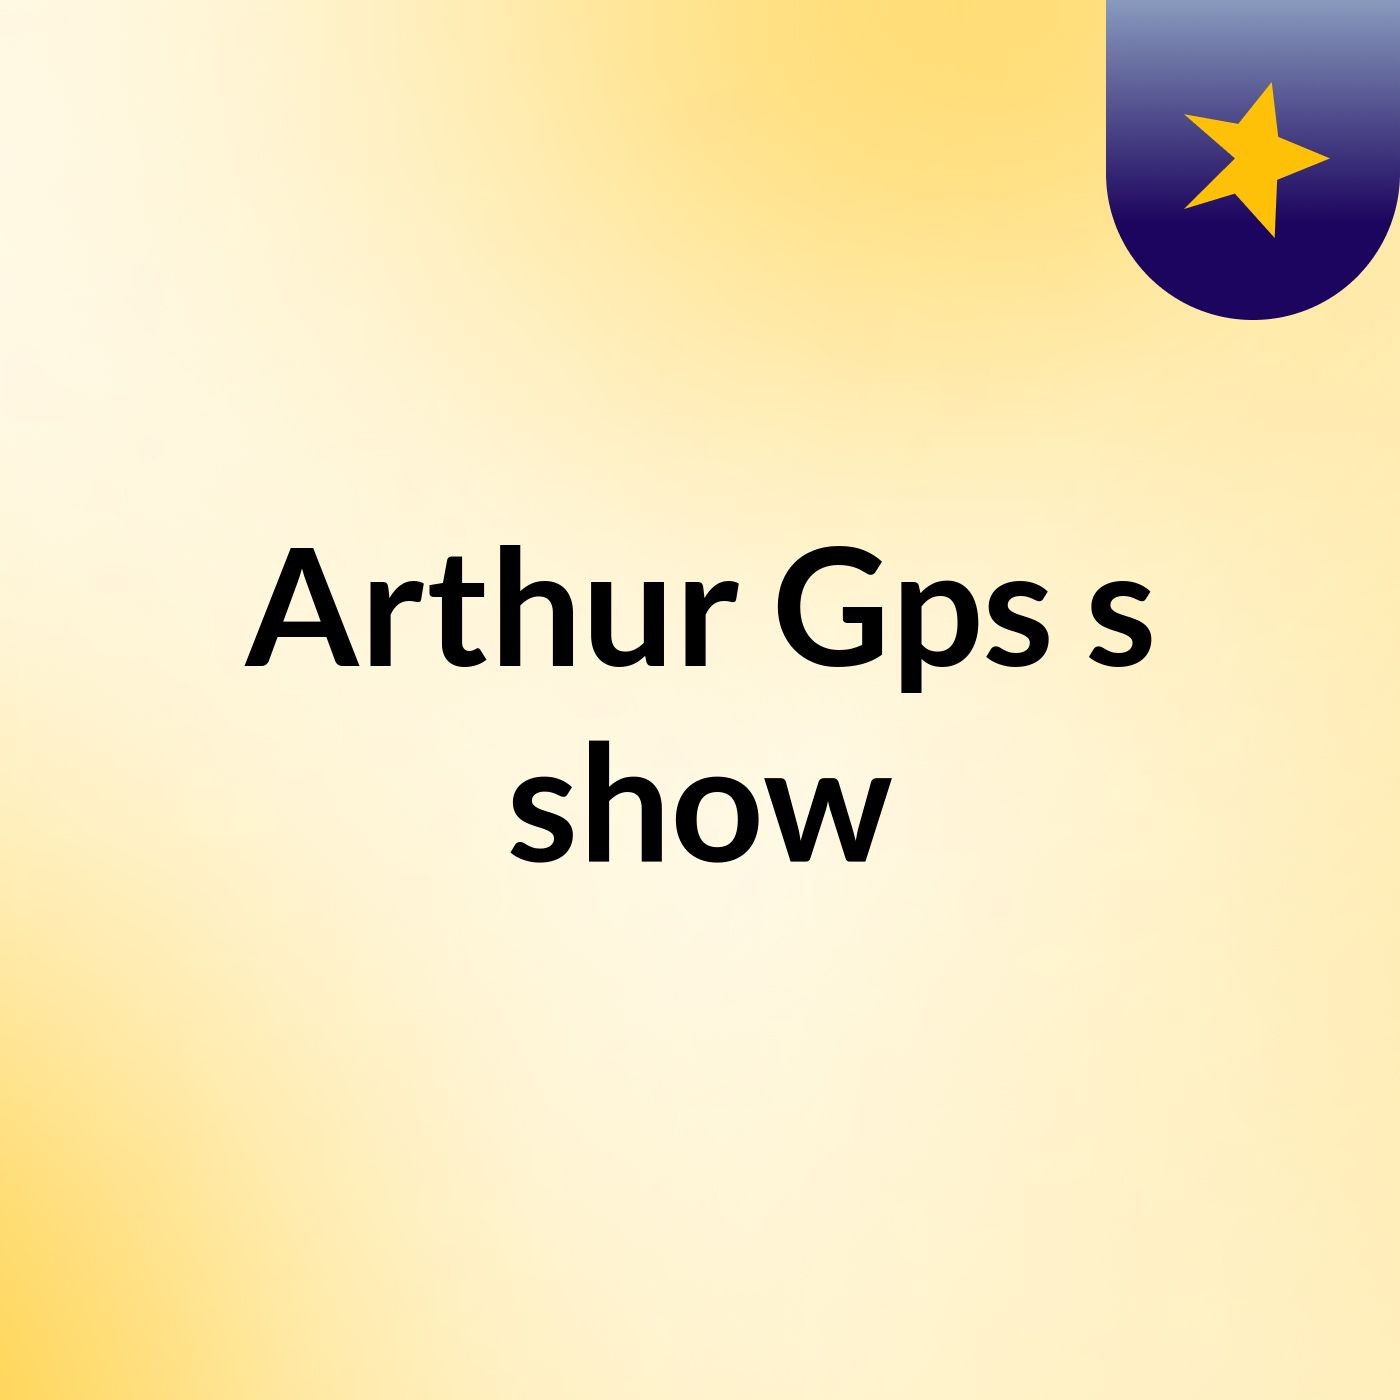 Arthur Gps's show